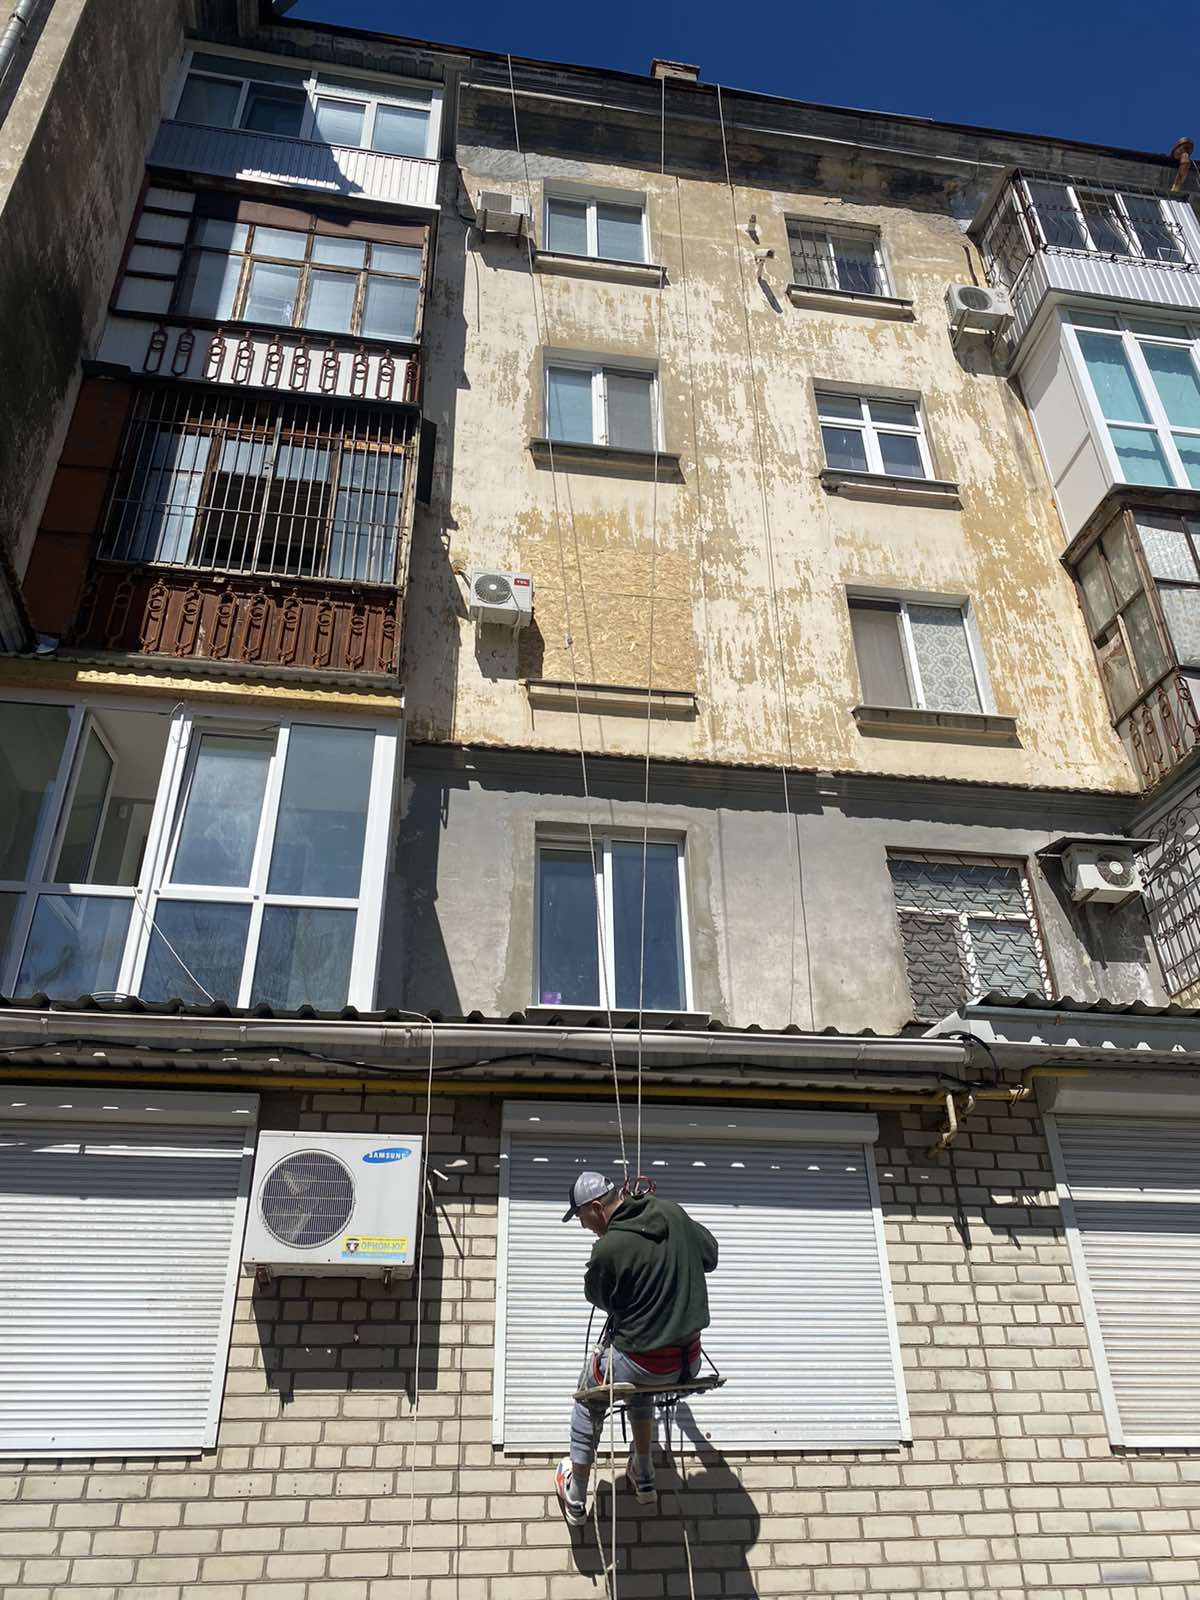 Обшивка окон и фасадов ОСБ плитами в Николаеве